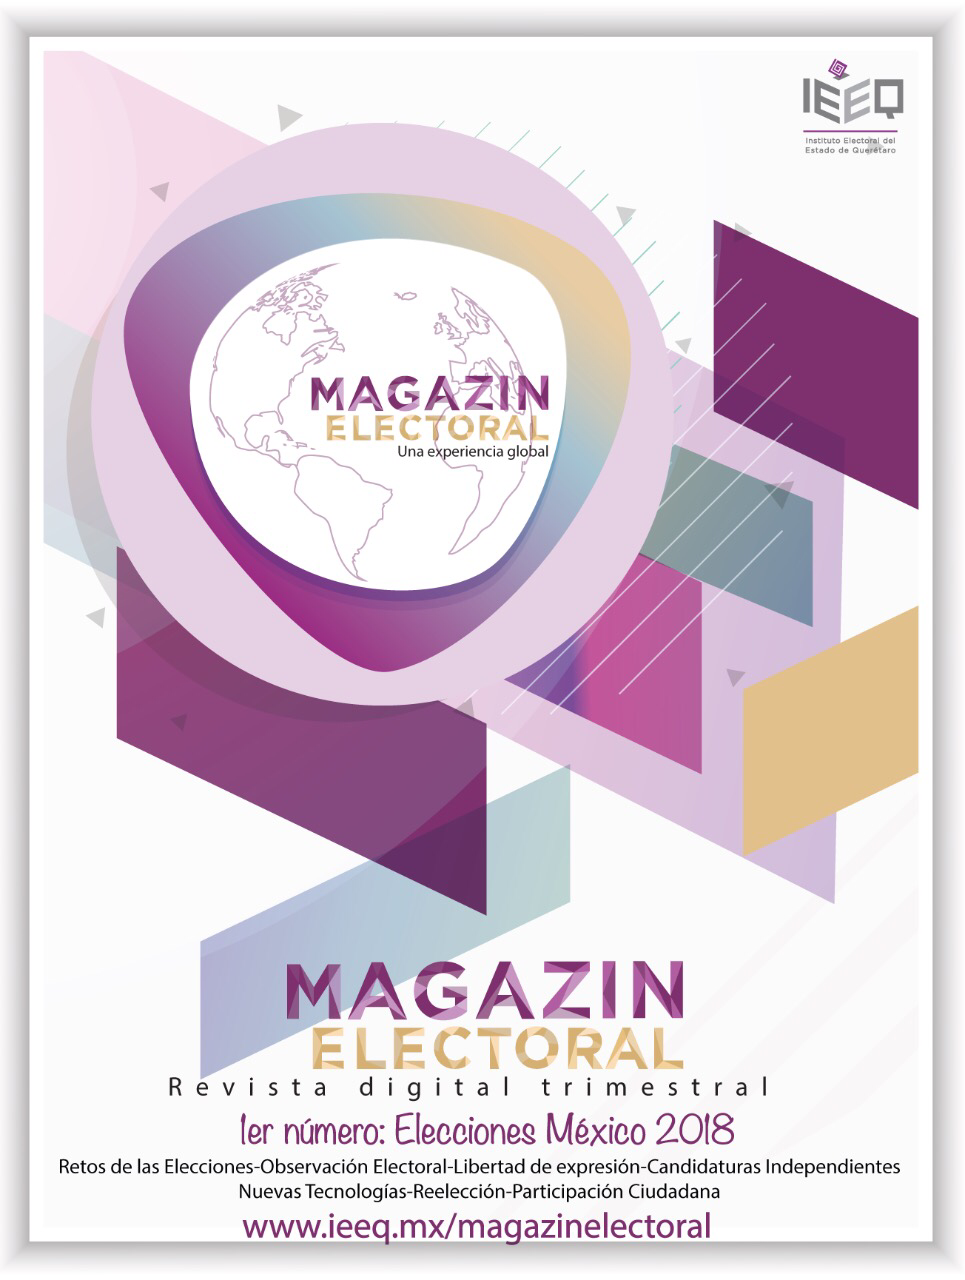  Promueve IEEQ cultura democrática a través de ‘Magazin Electoral’